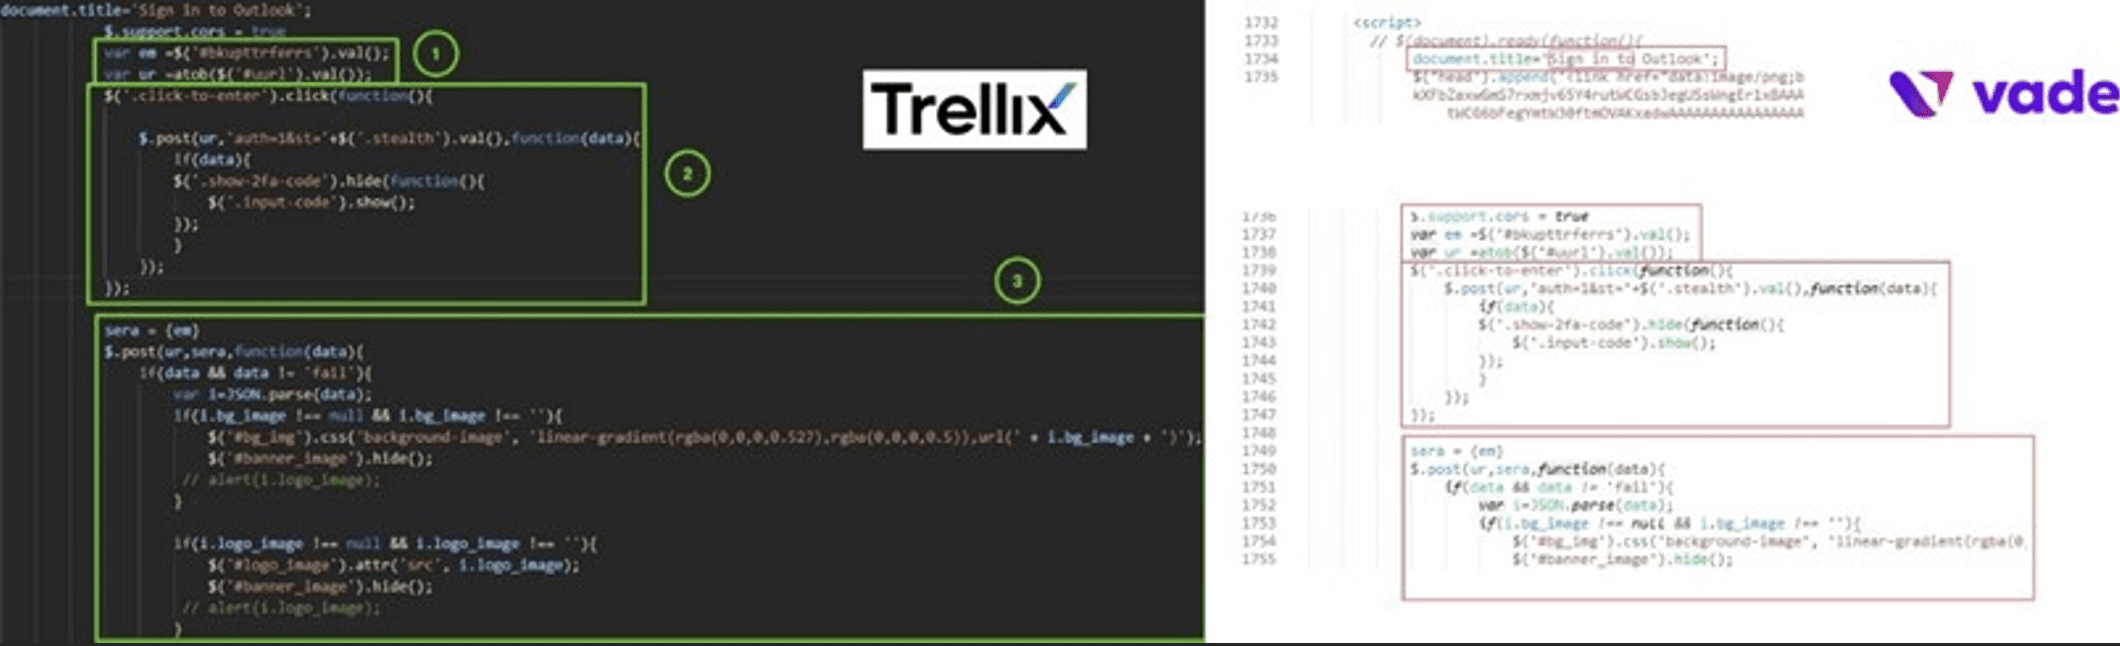 Attaques de quishing – Comparaison de code entre l’extrait analysé par Trellix et celui analysé par Vade